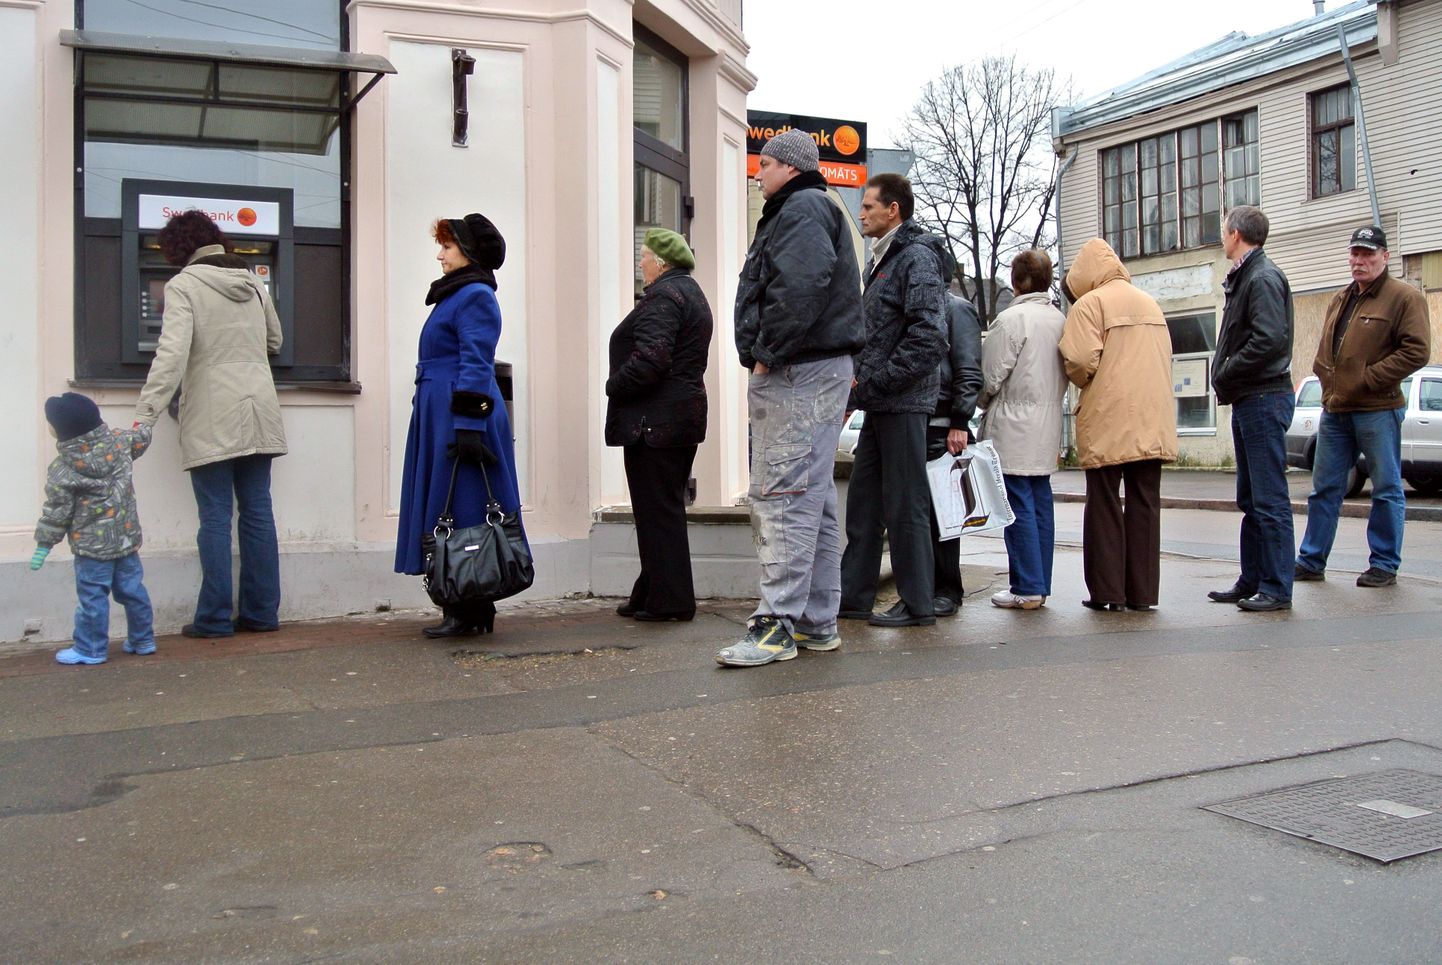 Kliendid 12. detsembril Riias Swedbanki sularahaautomaadi juures järjekorras.